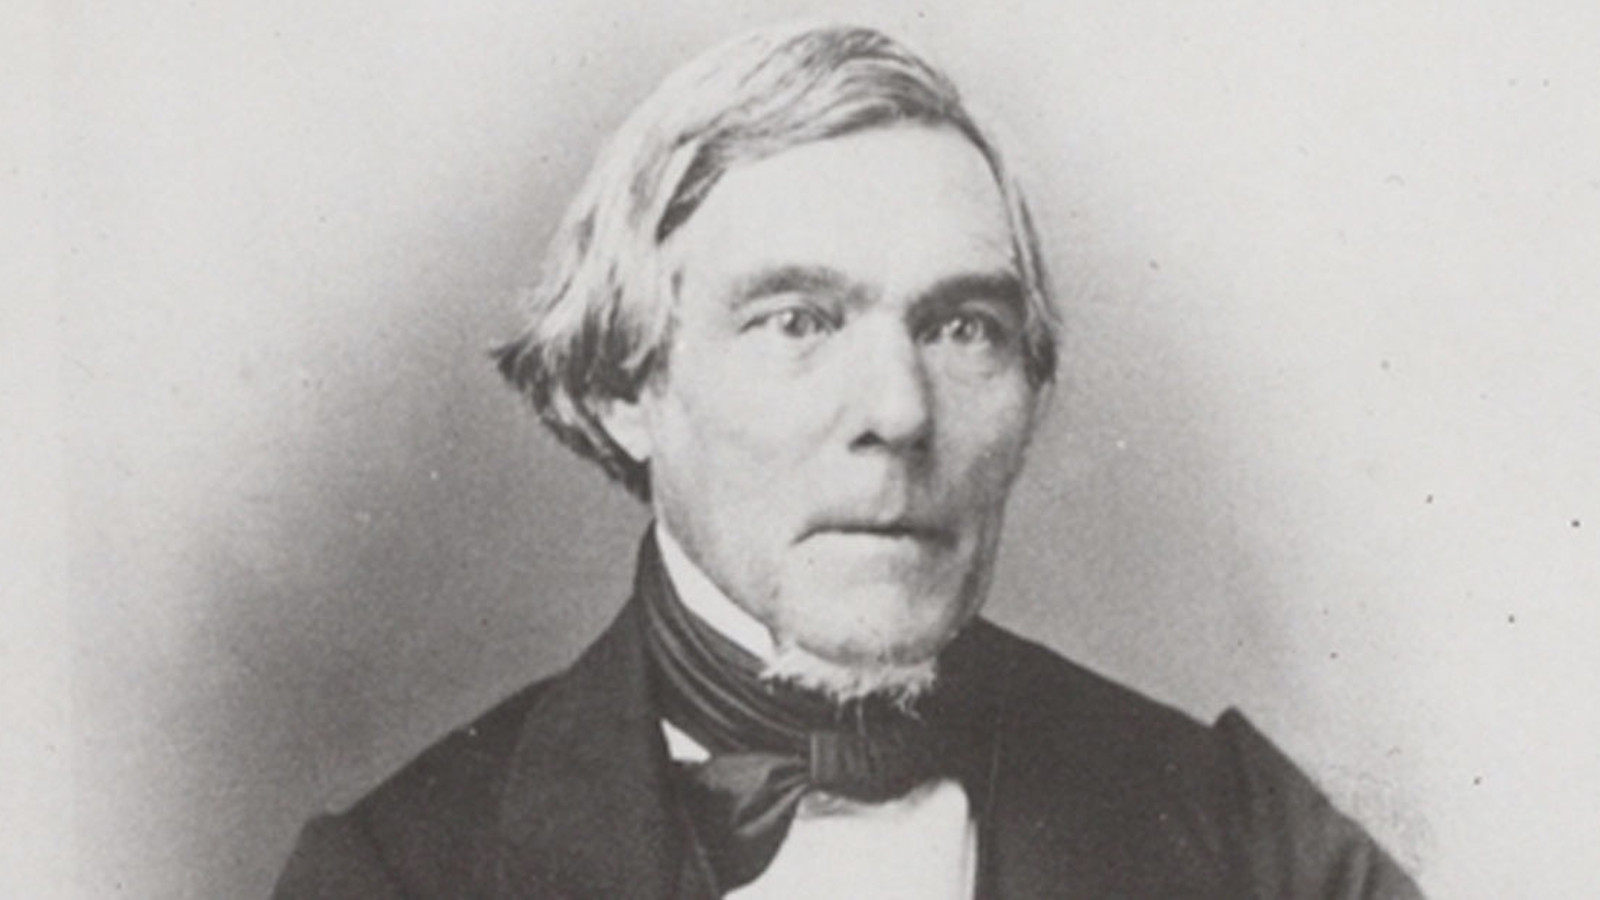 Kuvassa on Elias Lönnrotin kasvokuva musta-valkoisena.